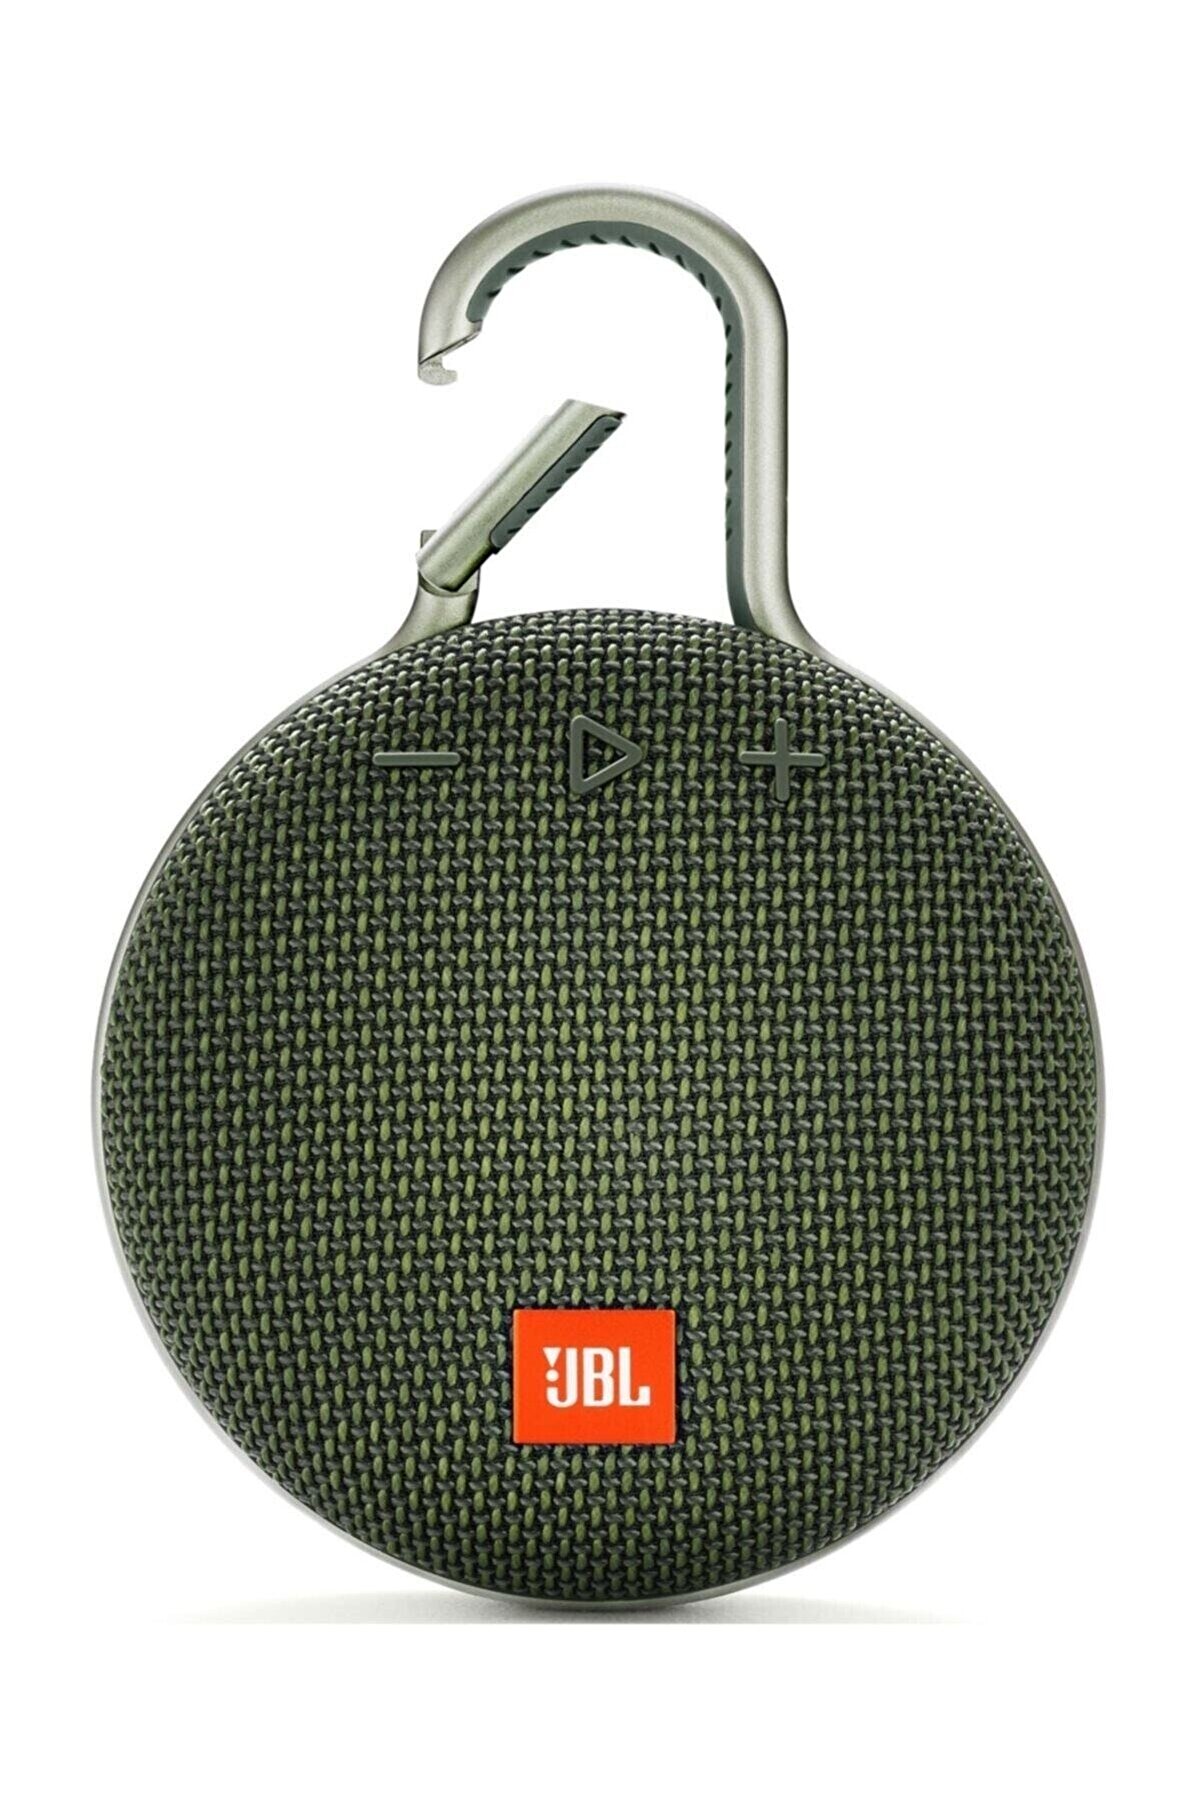 JBL Clip3 Yeşil Ipx7 Su Geçirmez Taşınabilir Bluetooth Hoparlör